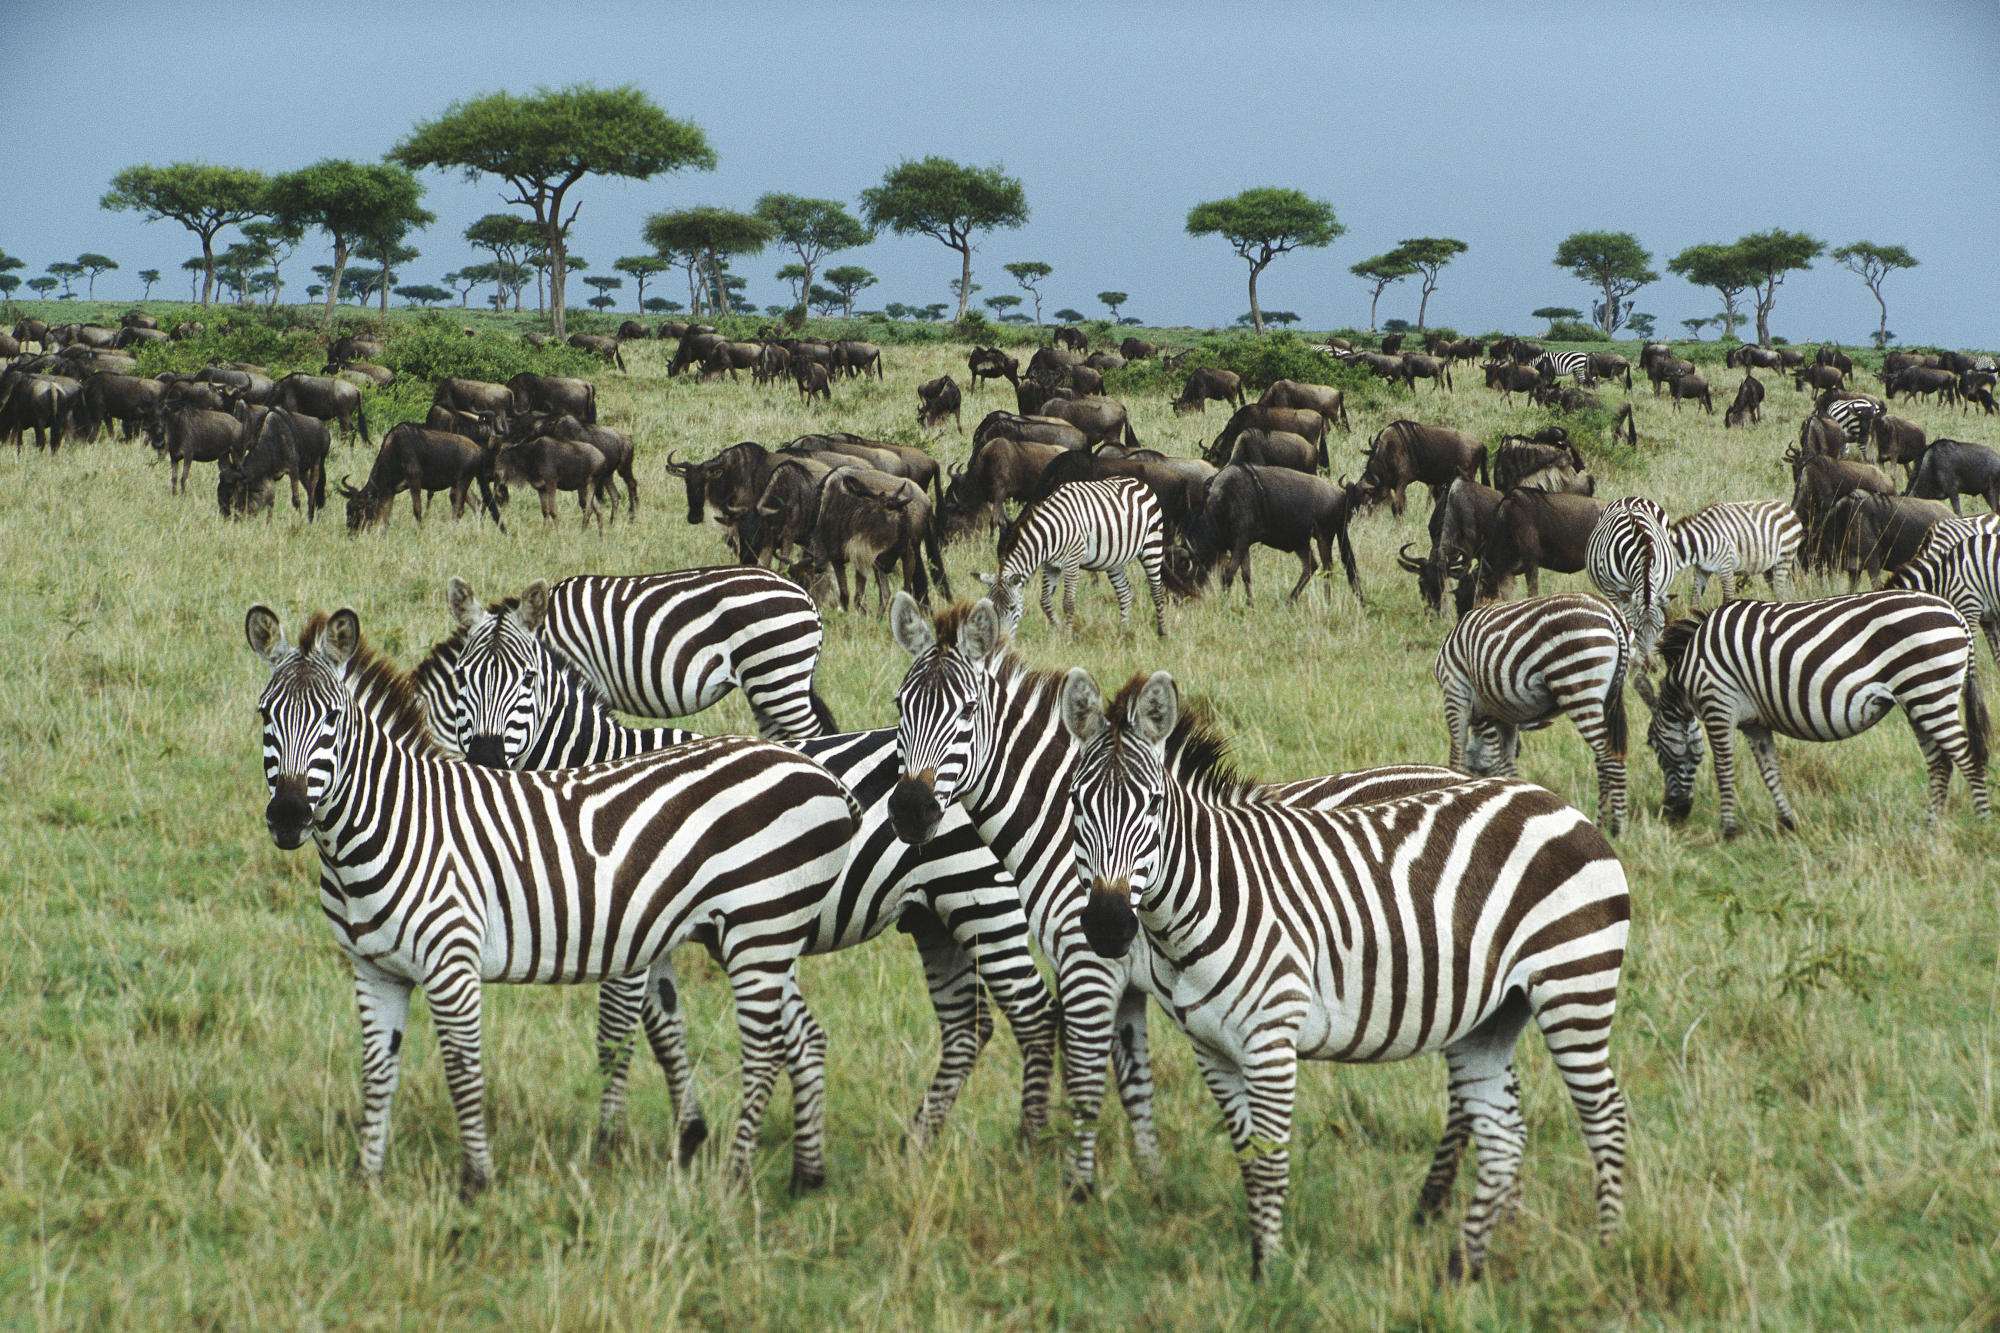 Бурчелловы зебры (Equus quagga) в Кении, Африка, фото обои, фотография картинка